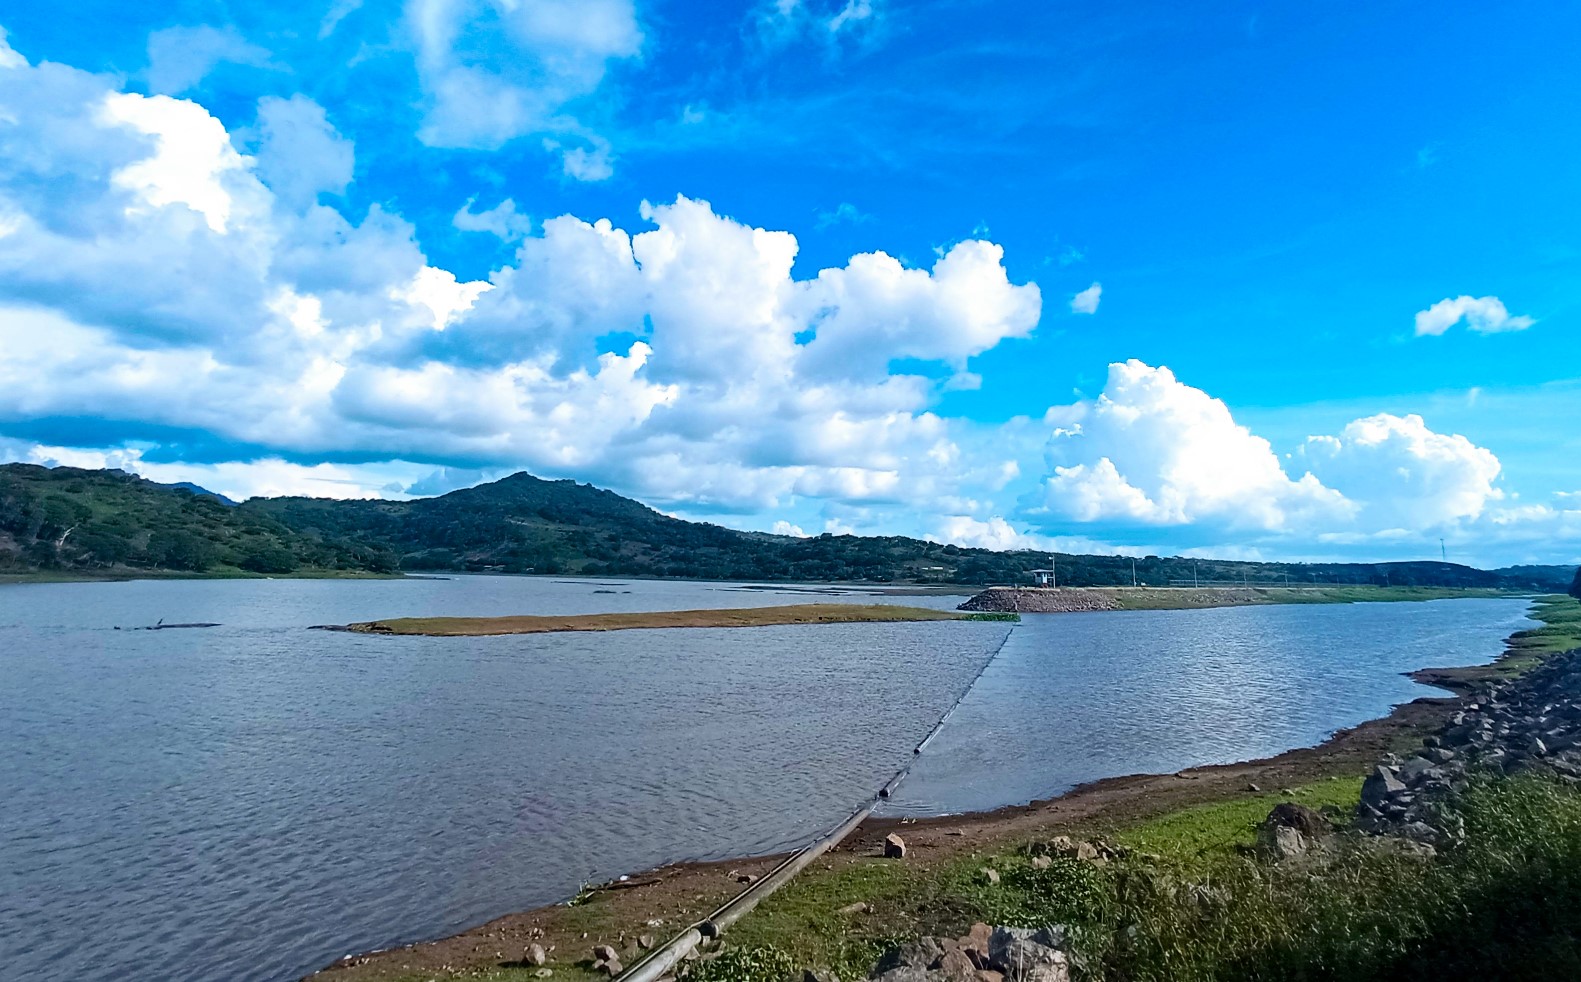 Apanás-Asturias: la Subcuenca Hidrológica de mayor importancia estratégica nacional